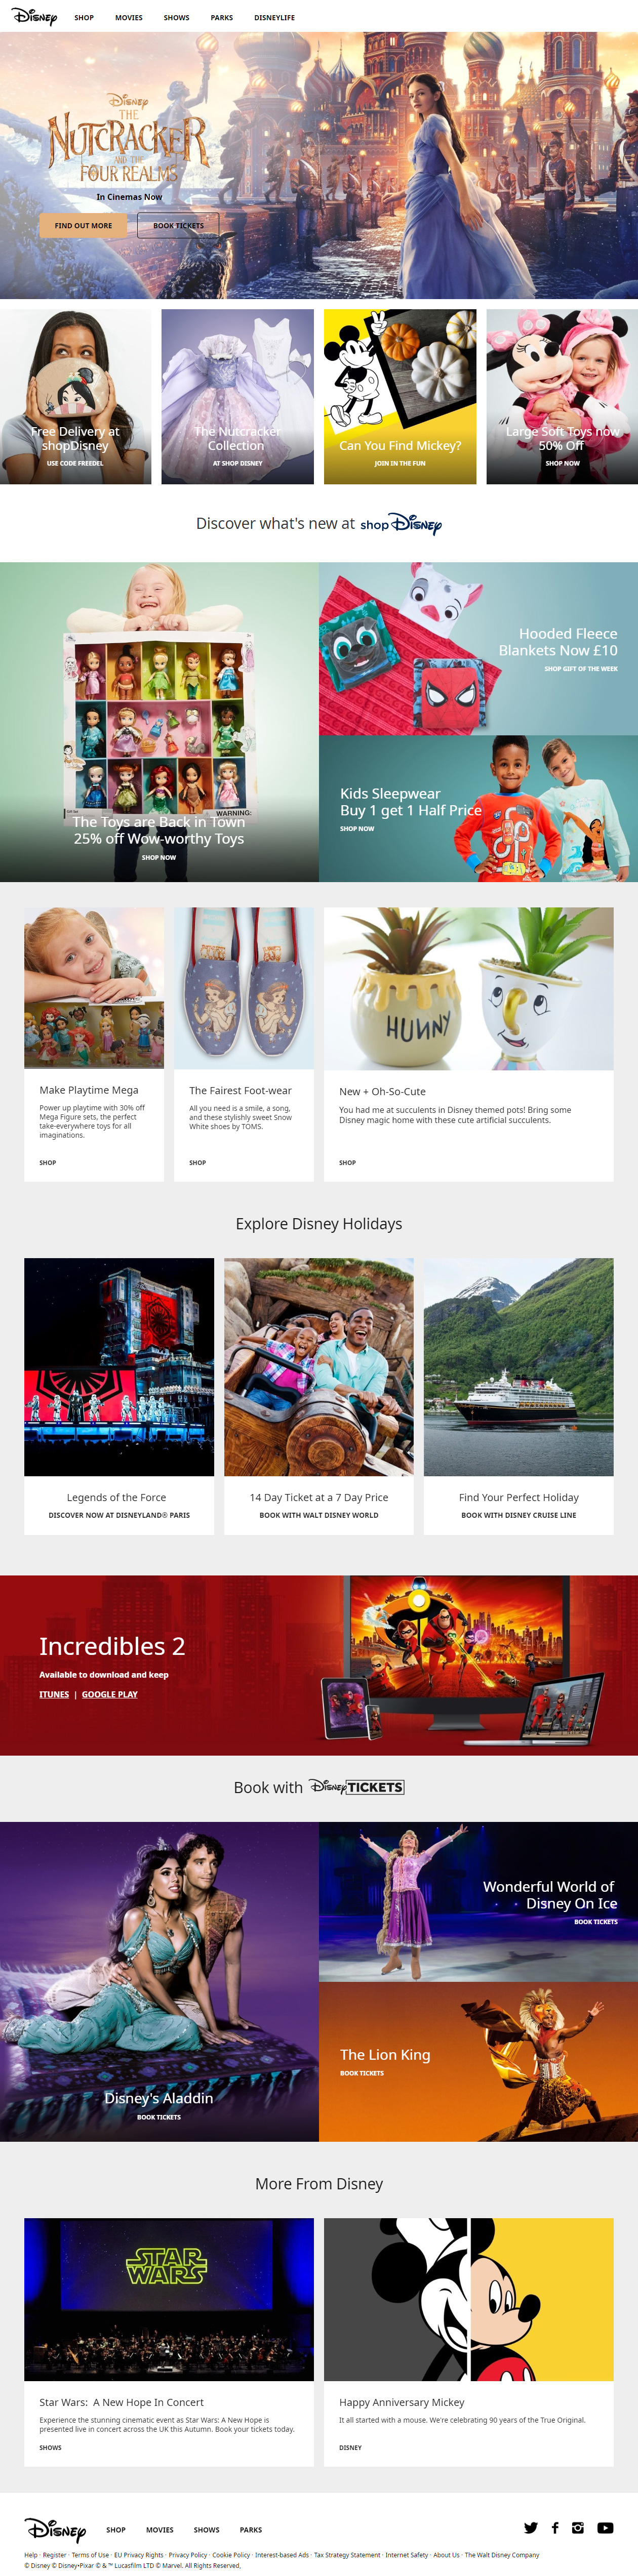 Disney website in 2018